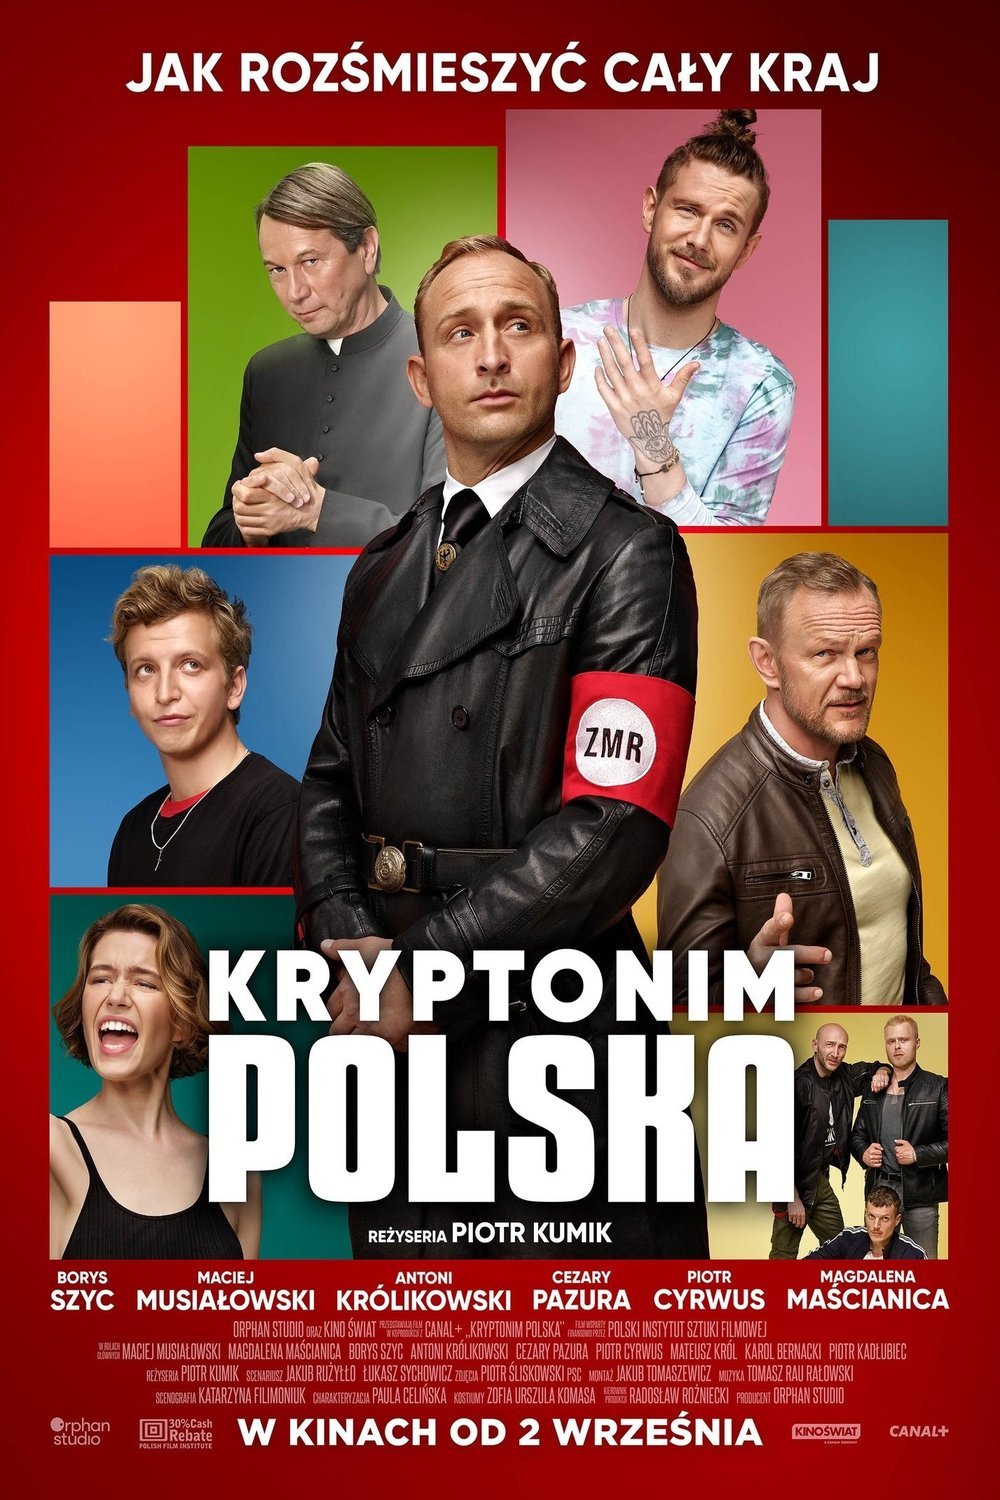 Polish poster of the movie Kryptonim: Polska